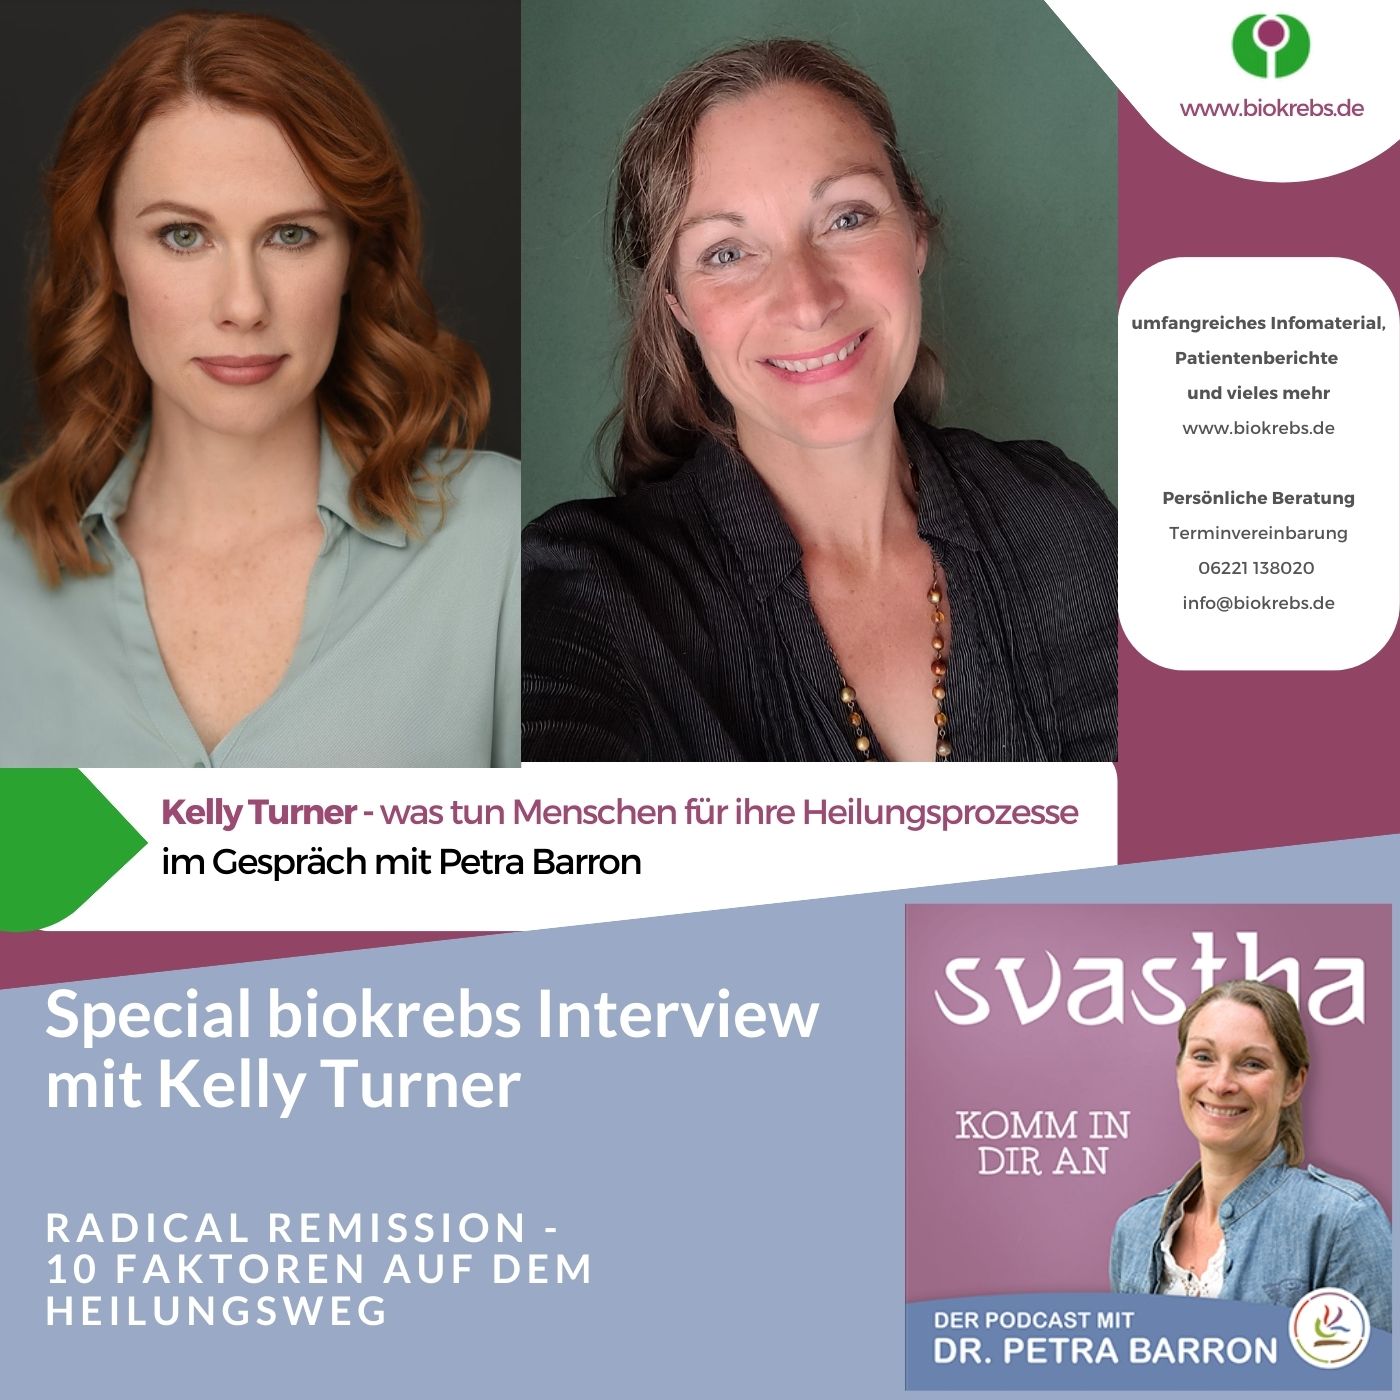 Special Biokrebs Interview mit Kelly Turner - 10 Faktoren auf dem Heilungsweg